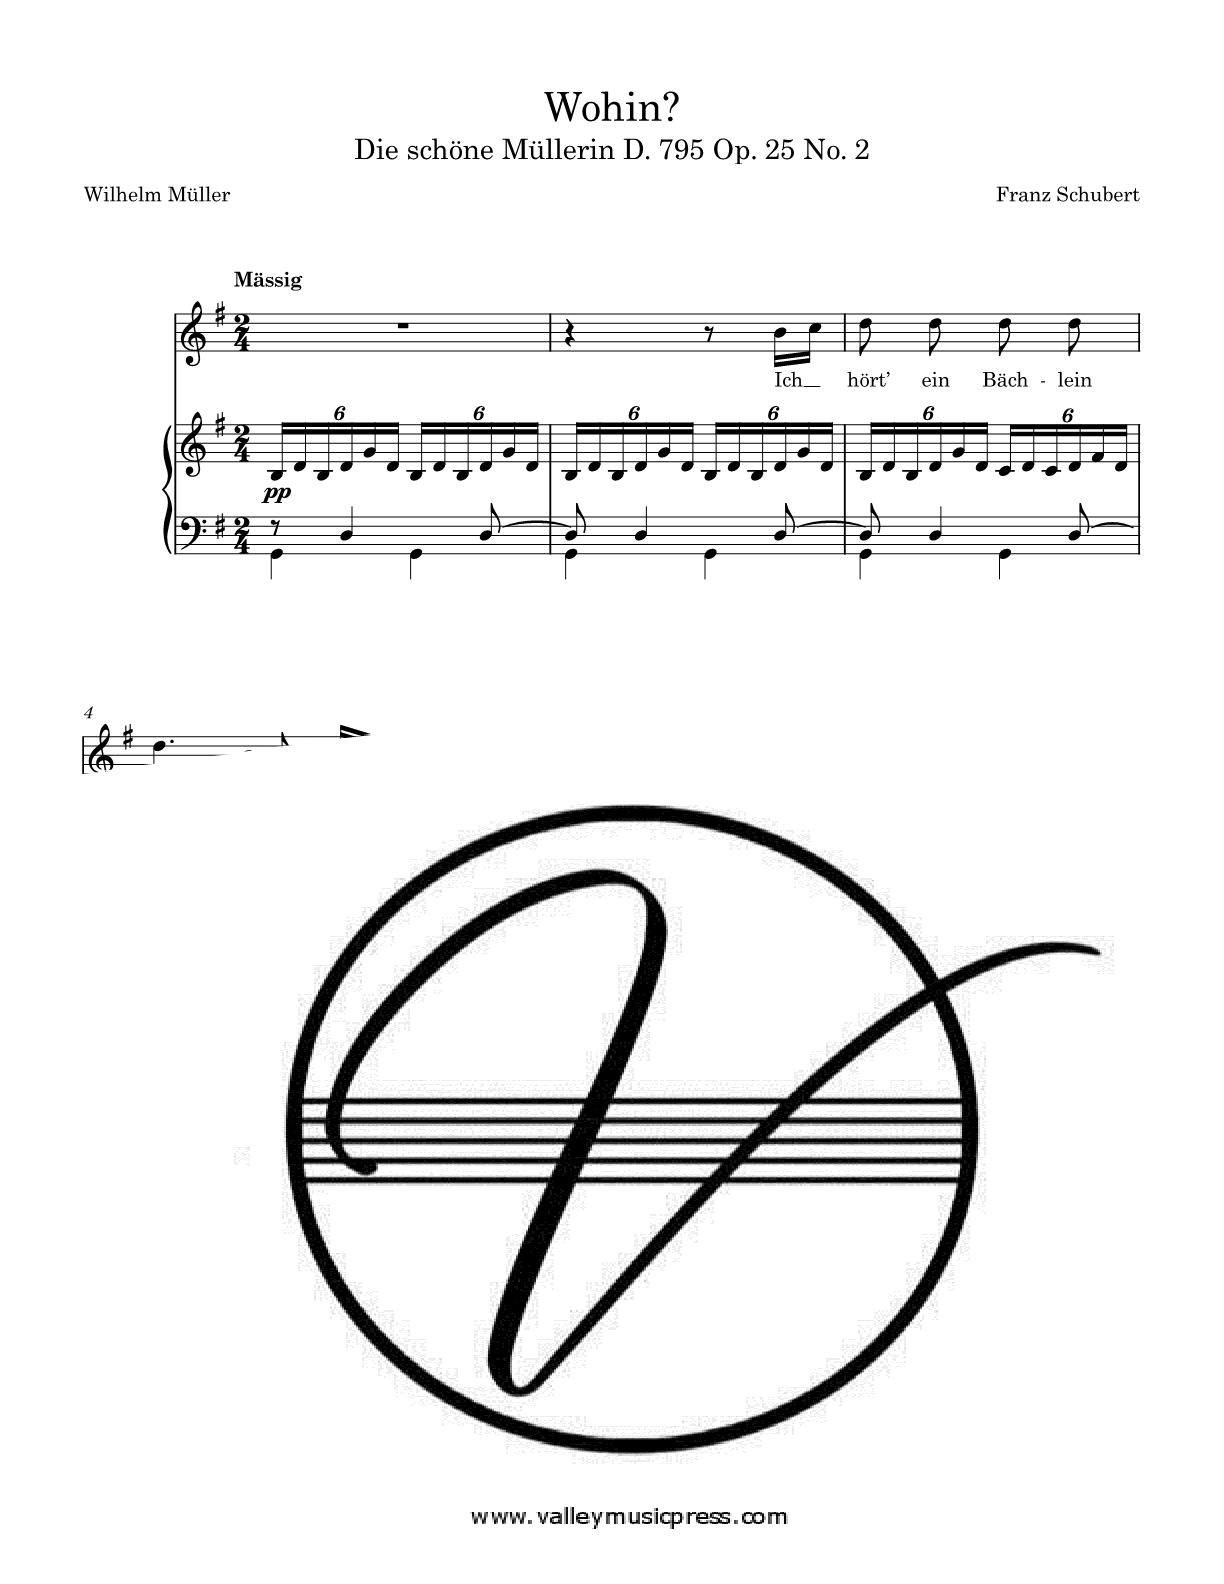 Schubert - Wohin? D. 795 Op. 25 No. 2 (Voice)